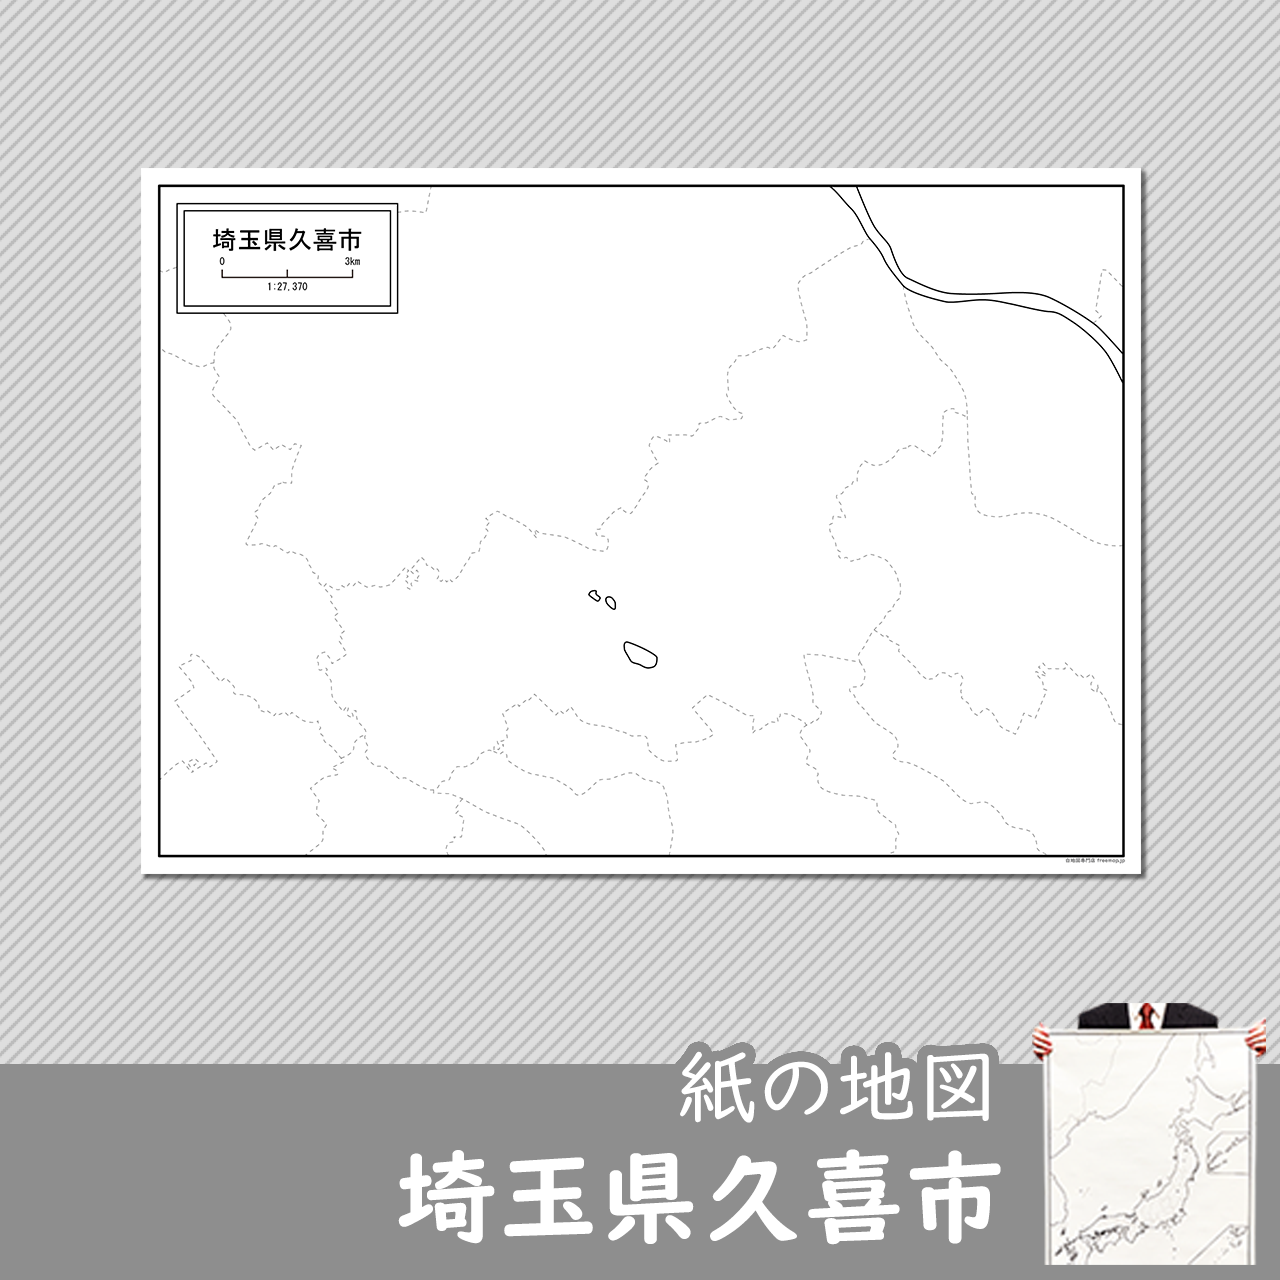 久喜市の紙の白地図のサムネイル